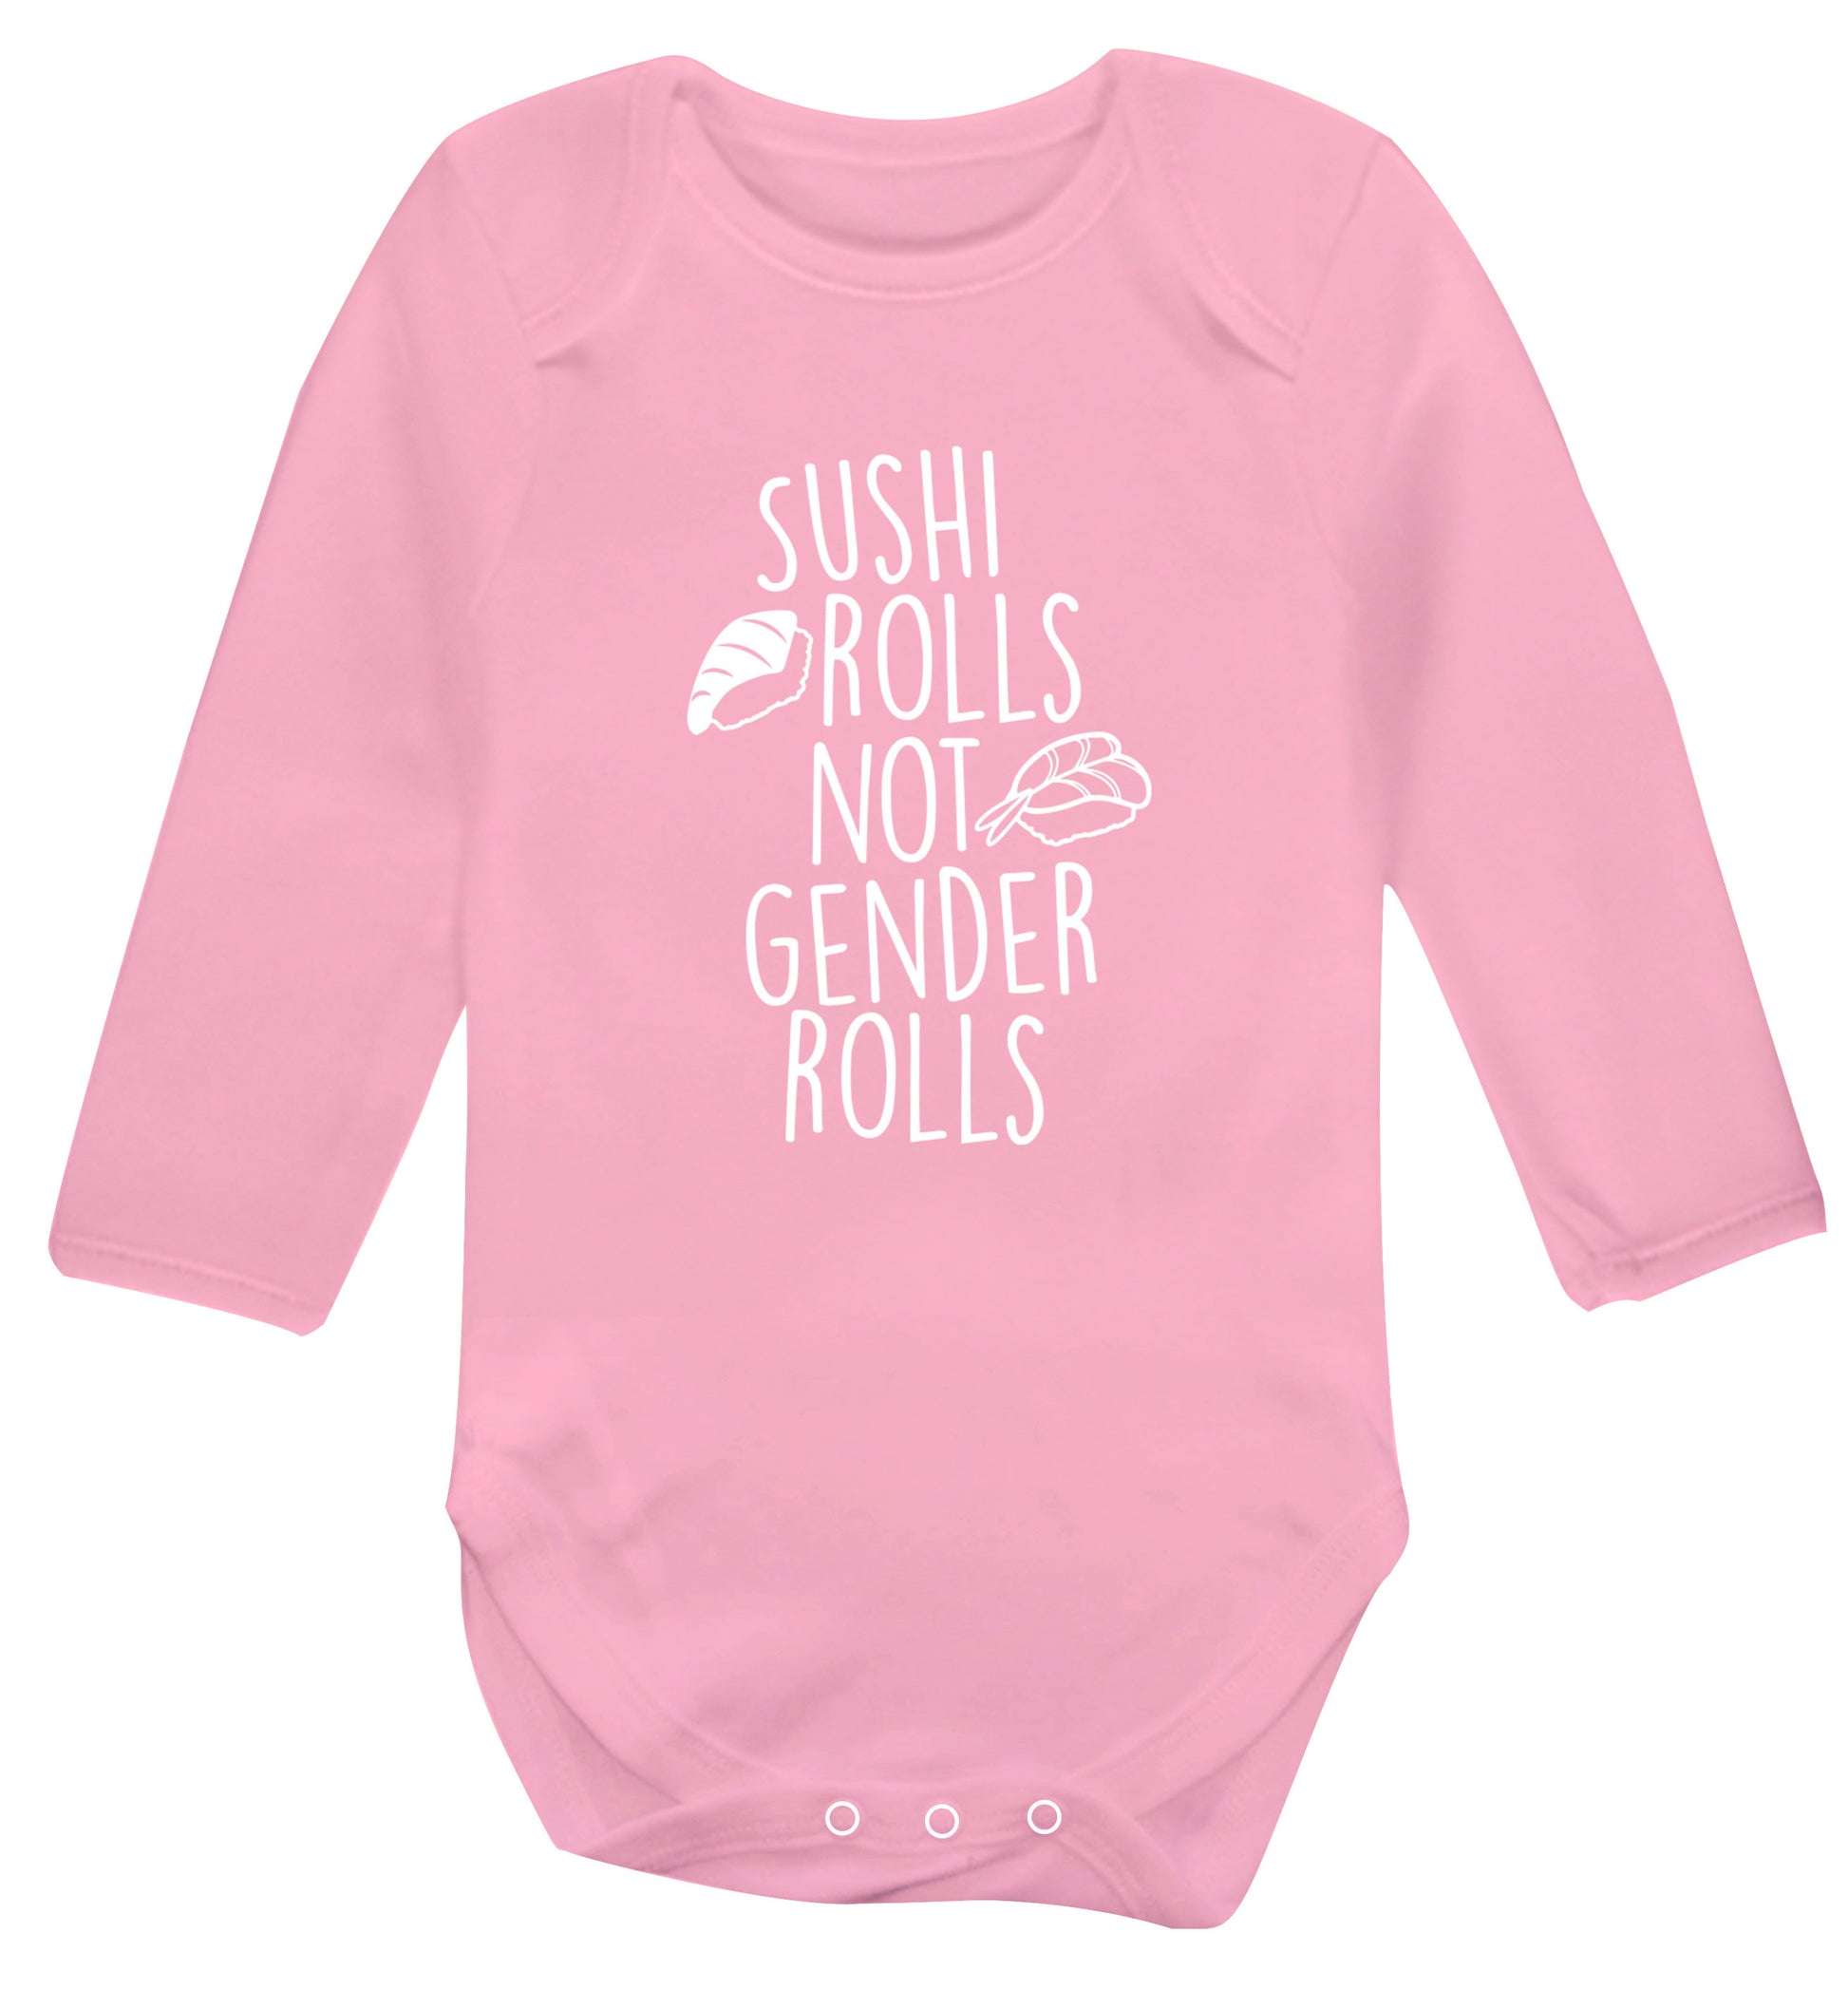 Sushi rolls not gender rolls Baby Vest long sleeved pale pink 6-12 months